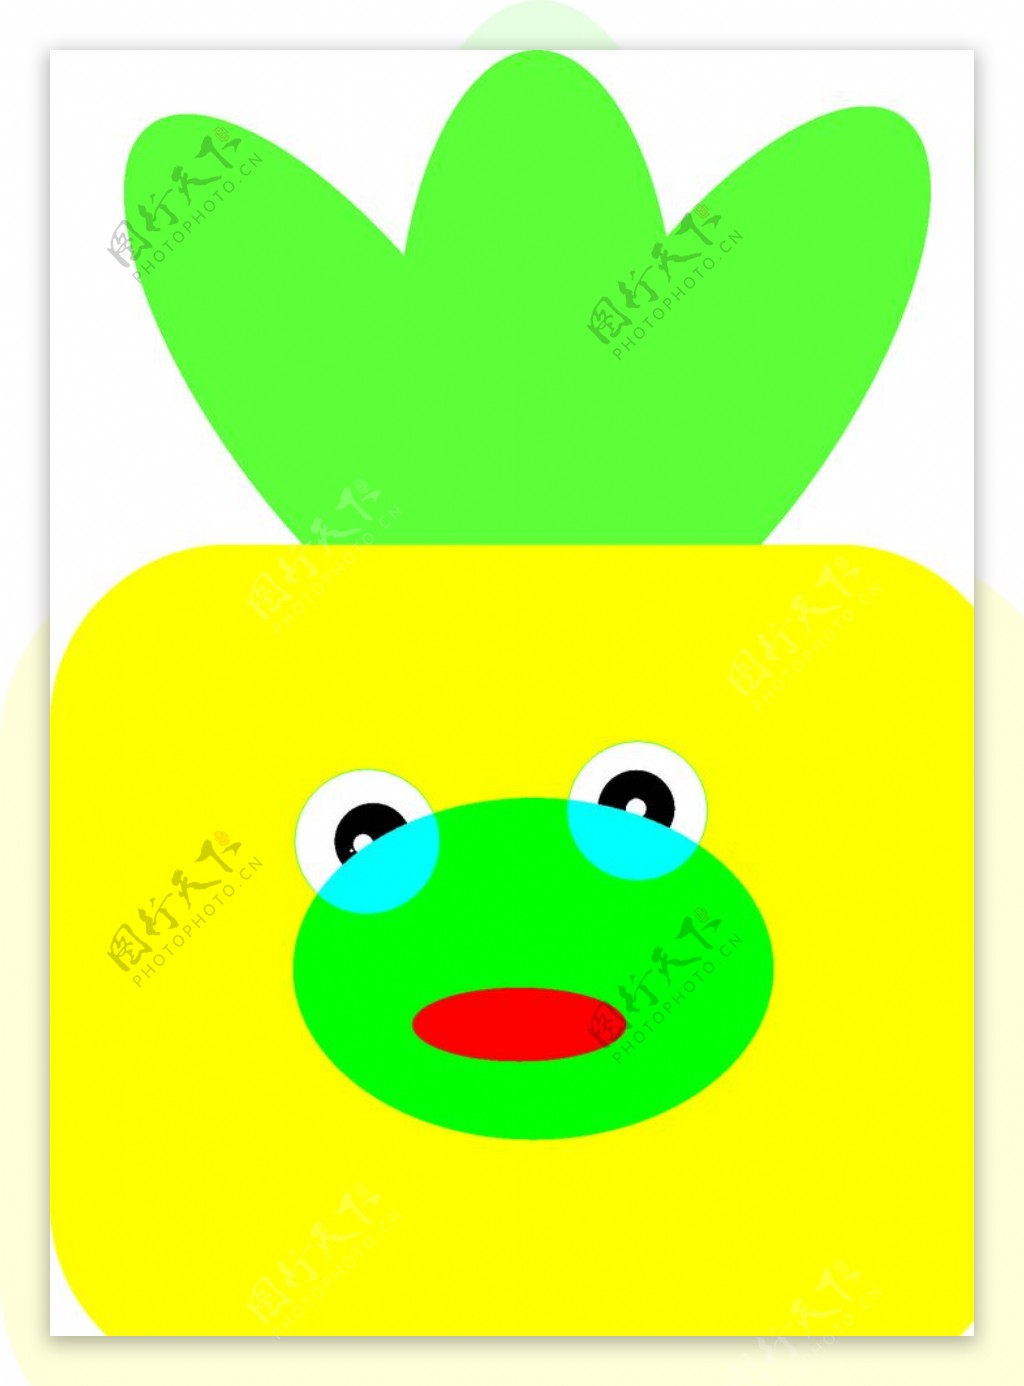 绿植青蛙头